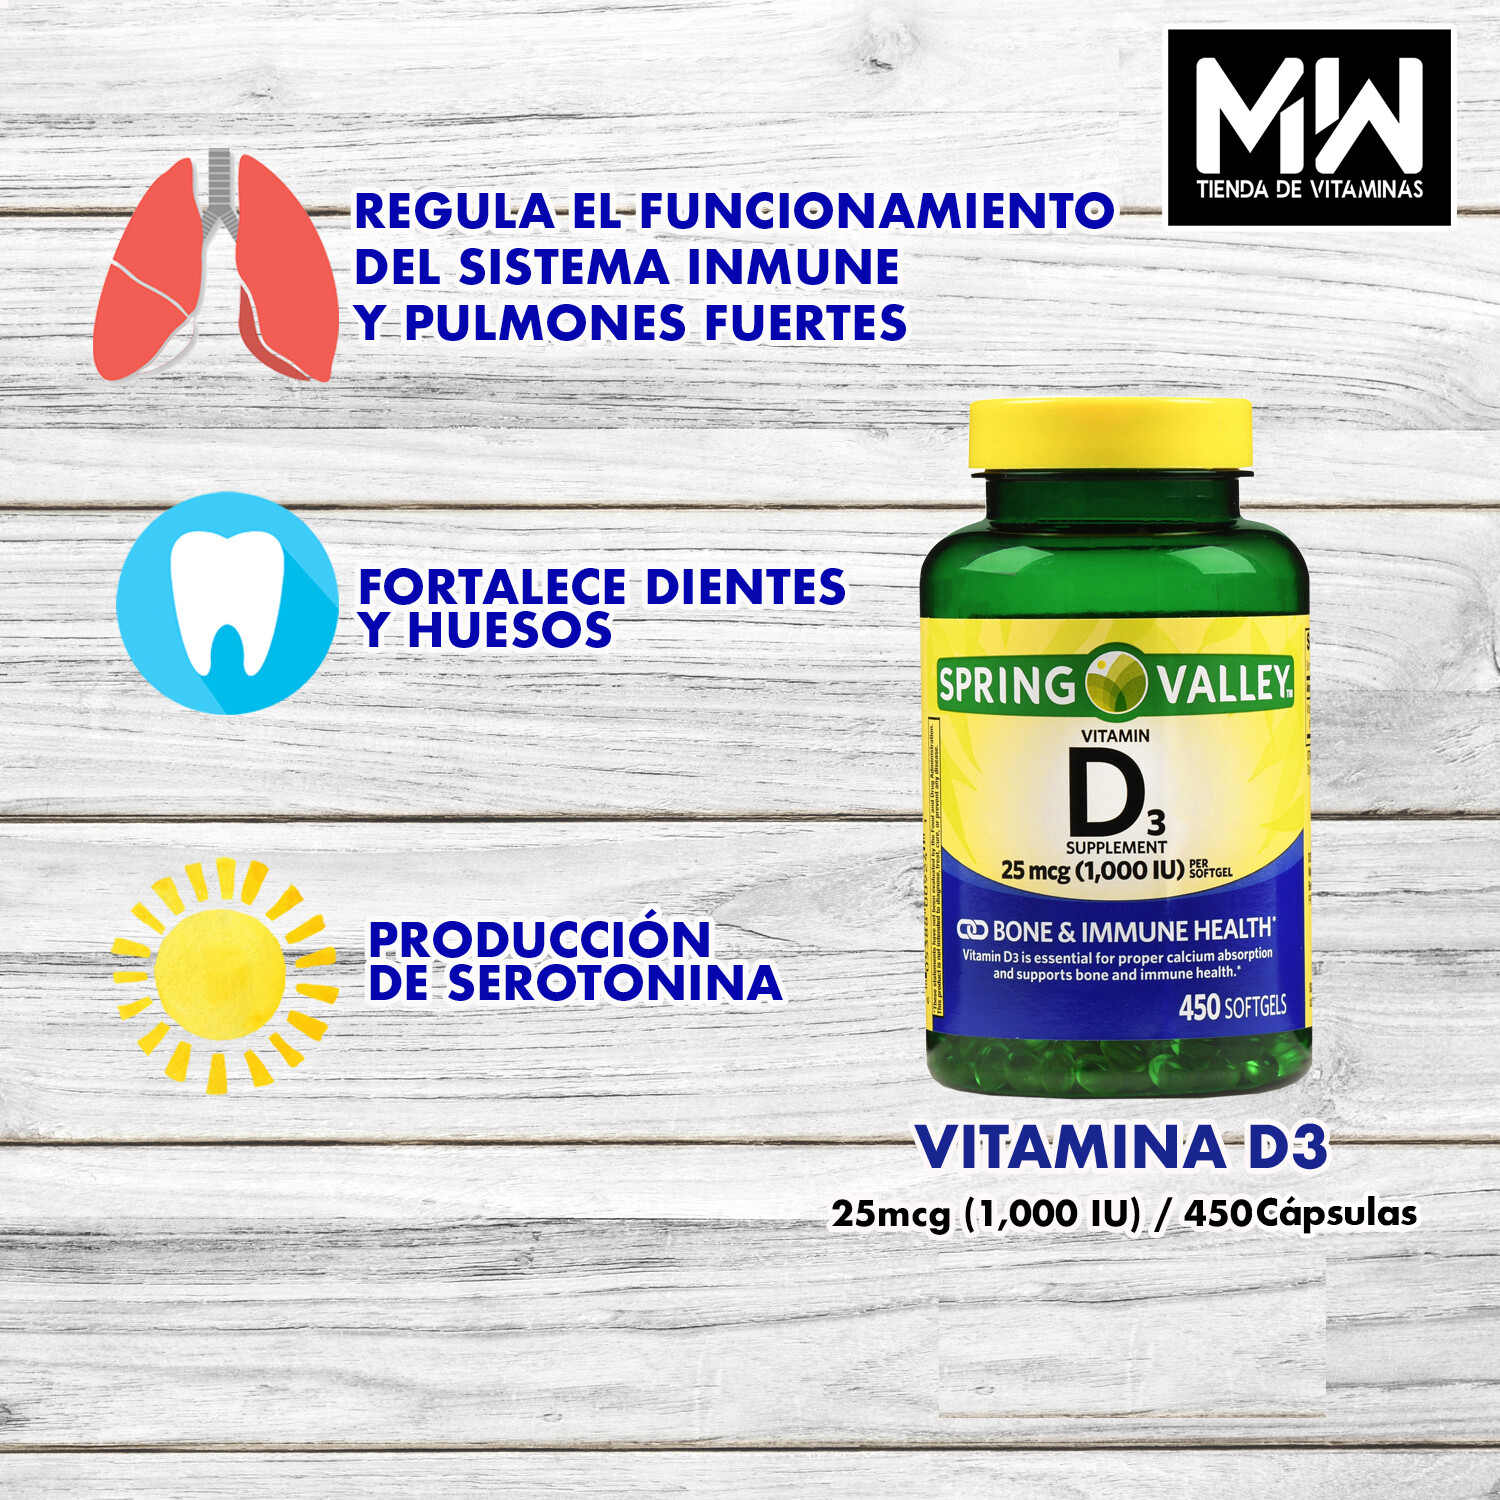 Vitamina D3 / Vitamin D3 25 mcg. (1,000 IU) 450 Caps.